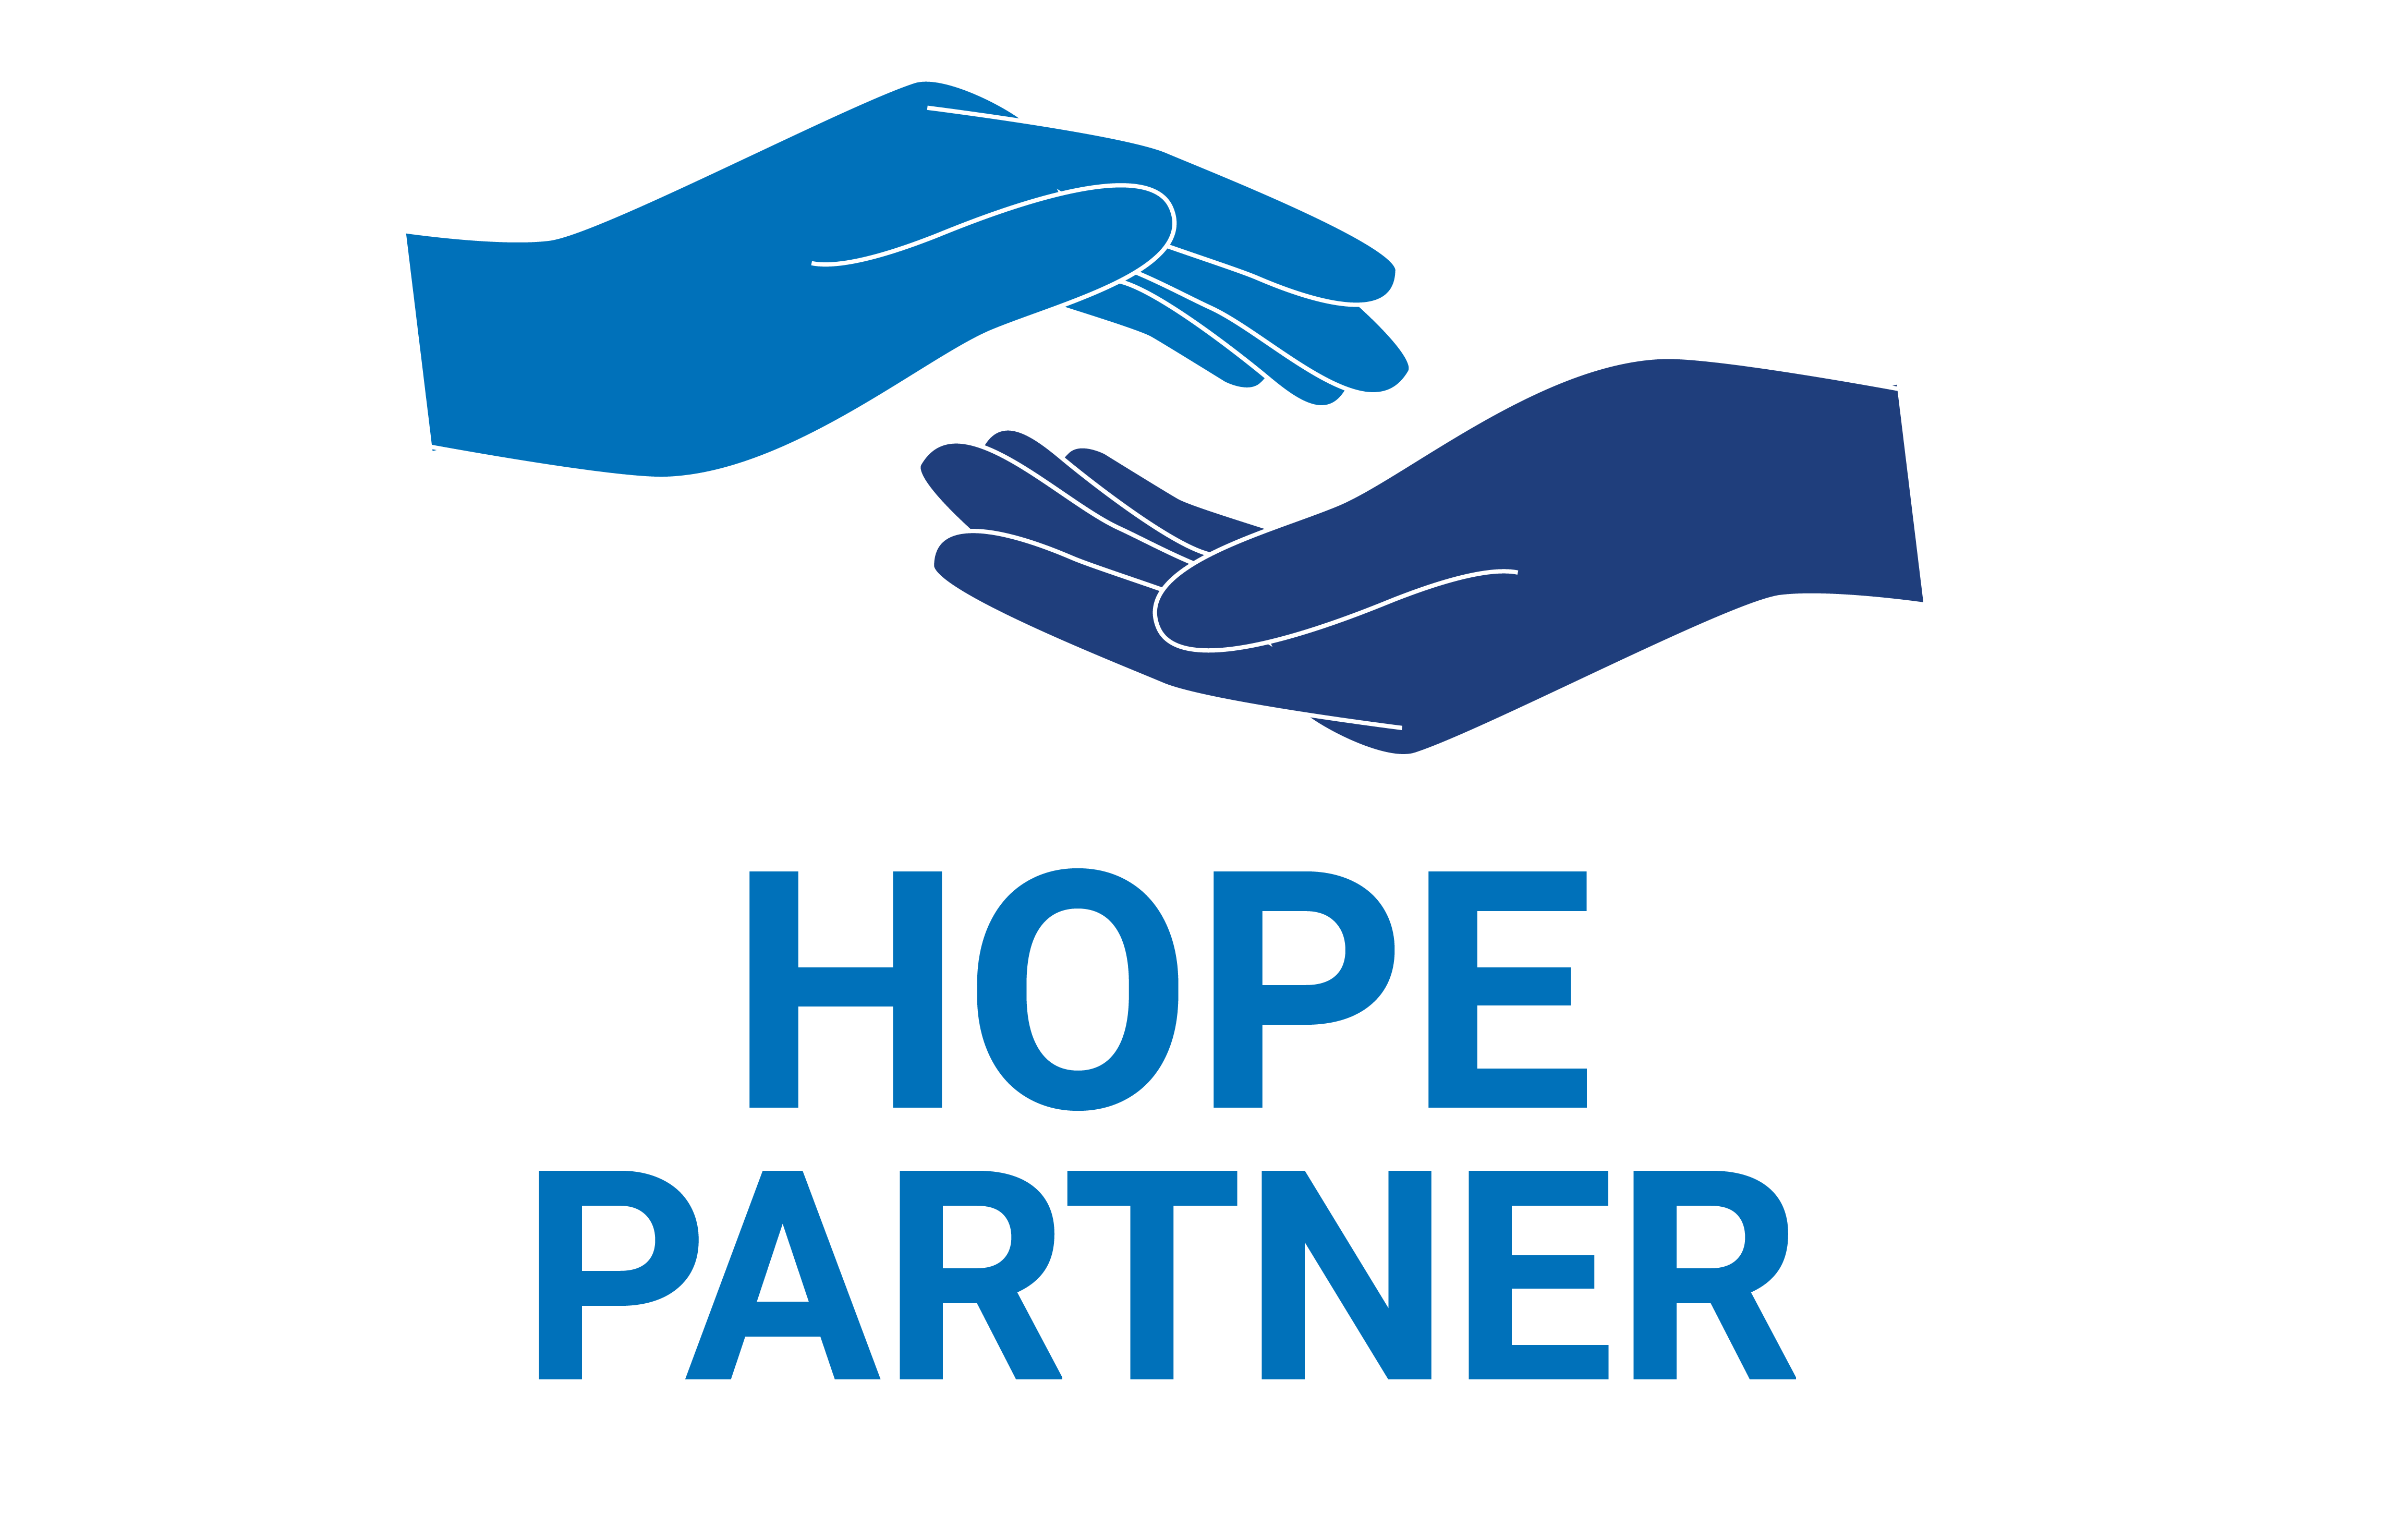 Hope Partner